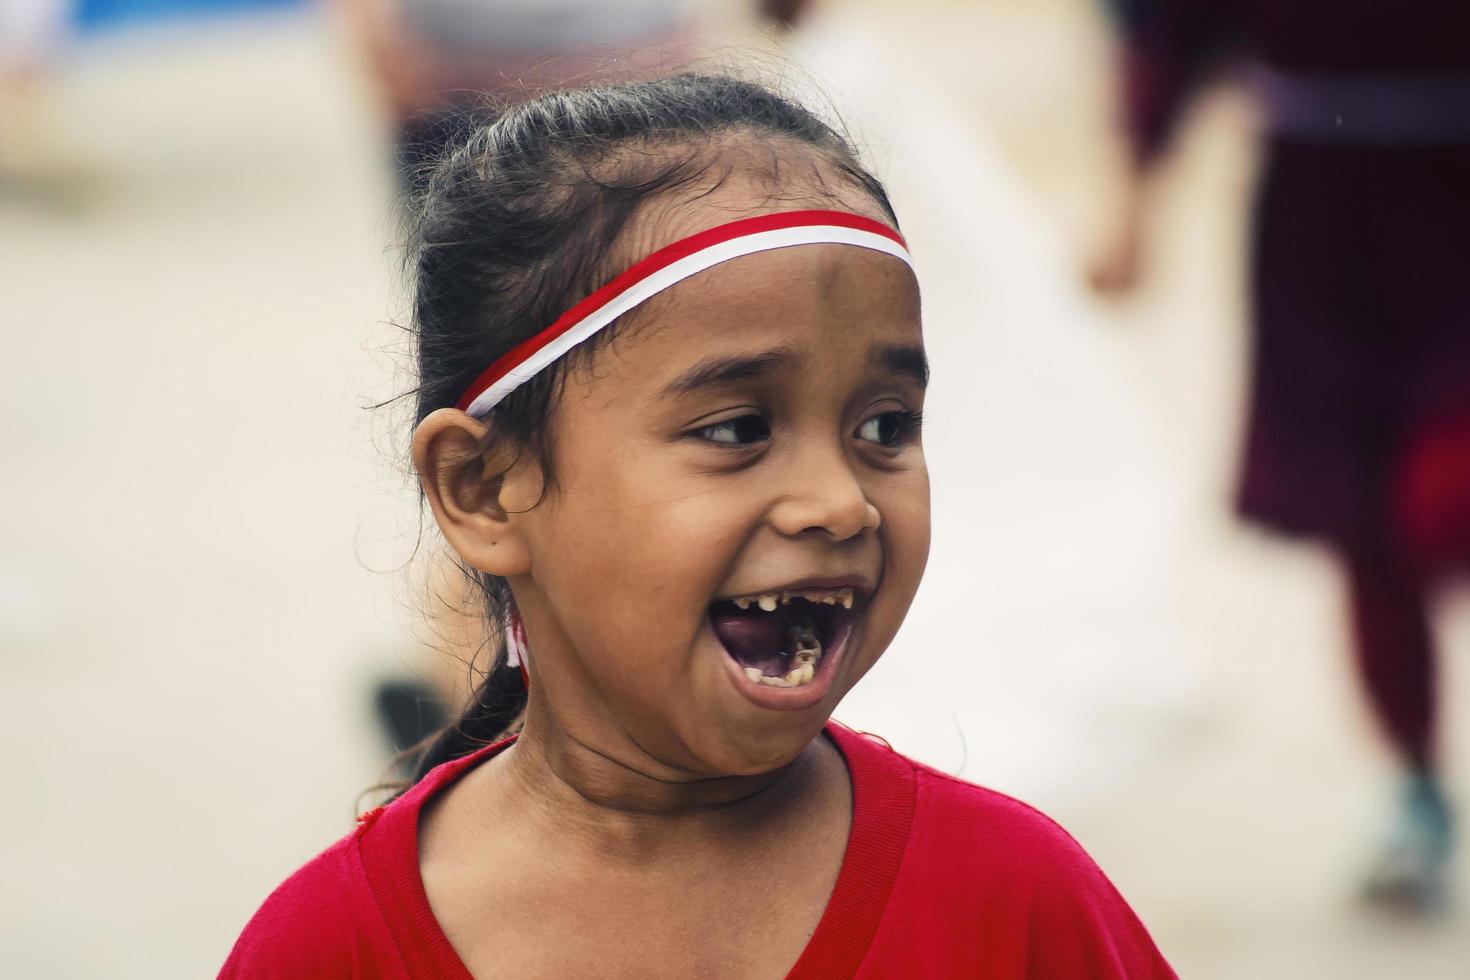 sorong, papua, indonesië 2021- mensen vieren de onafhankelijkheidsdag van indonesië met verschillende wedstrijden foto